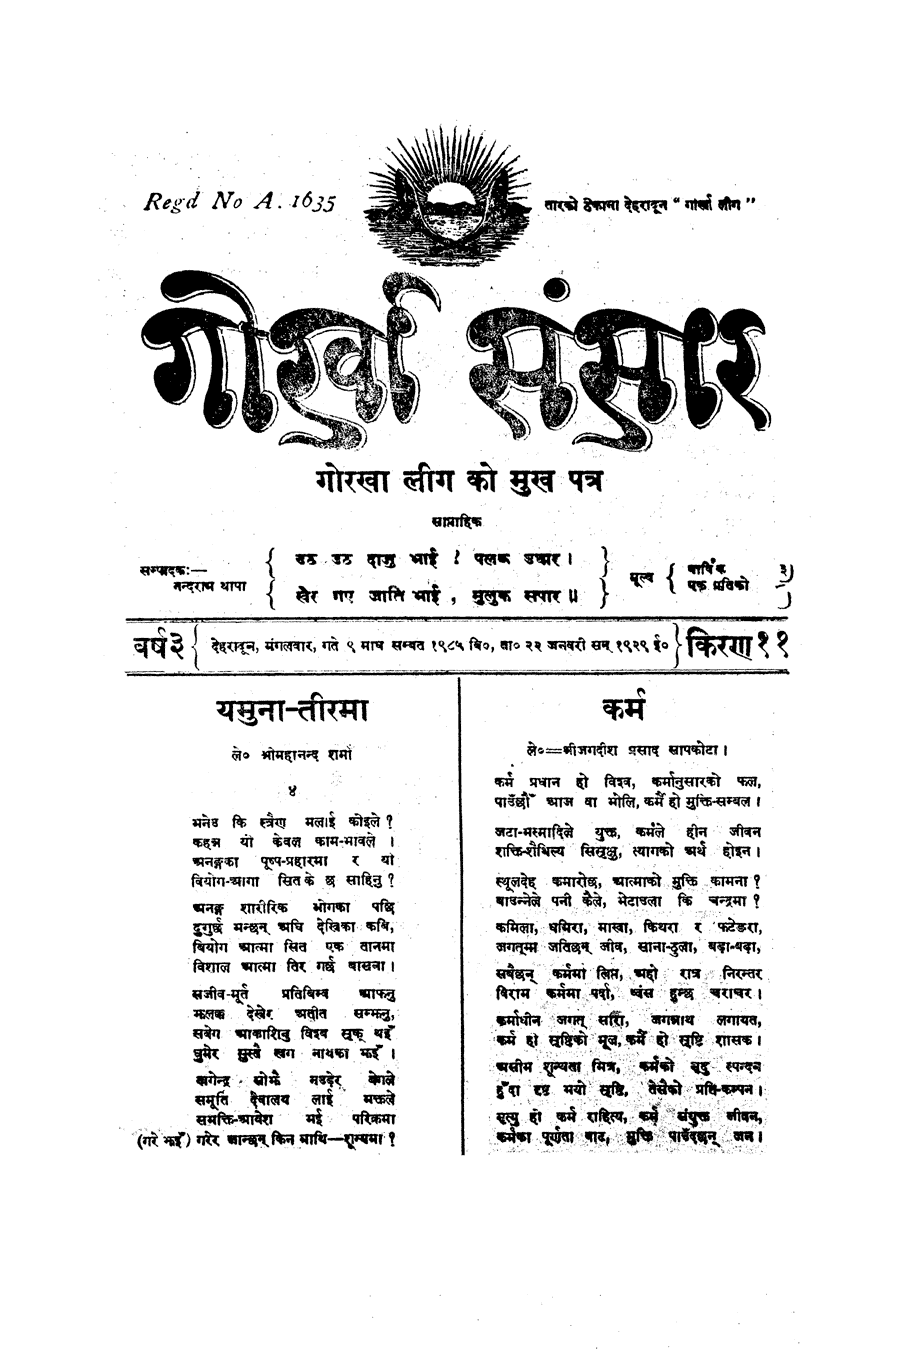 Gorkha Sansar, 22 Jan 1929, page 1